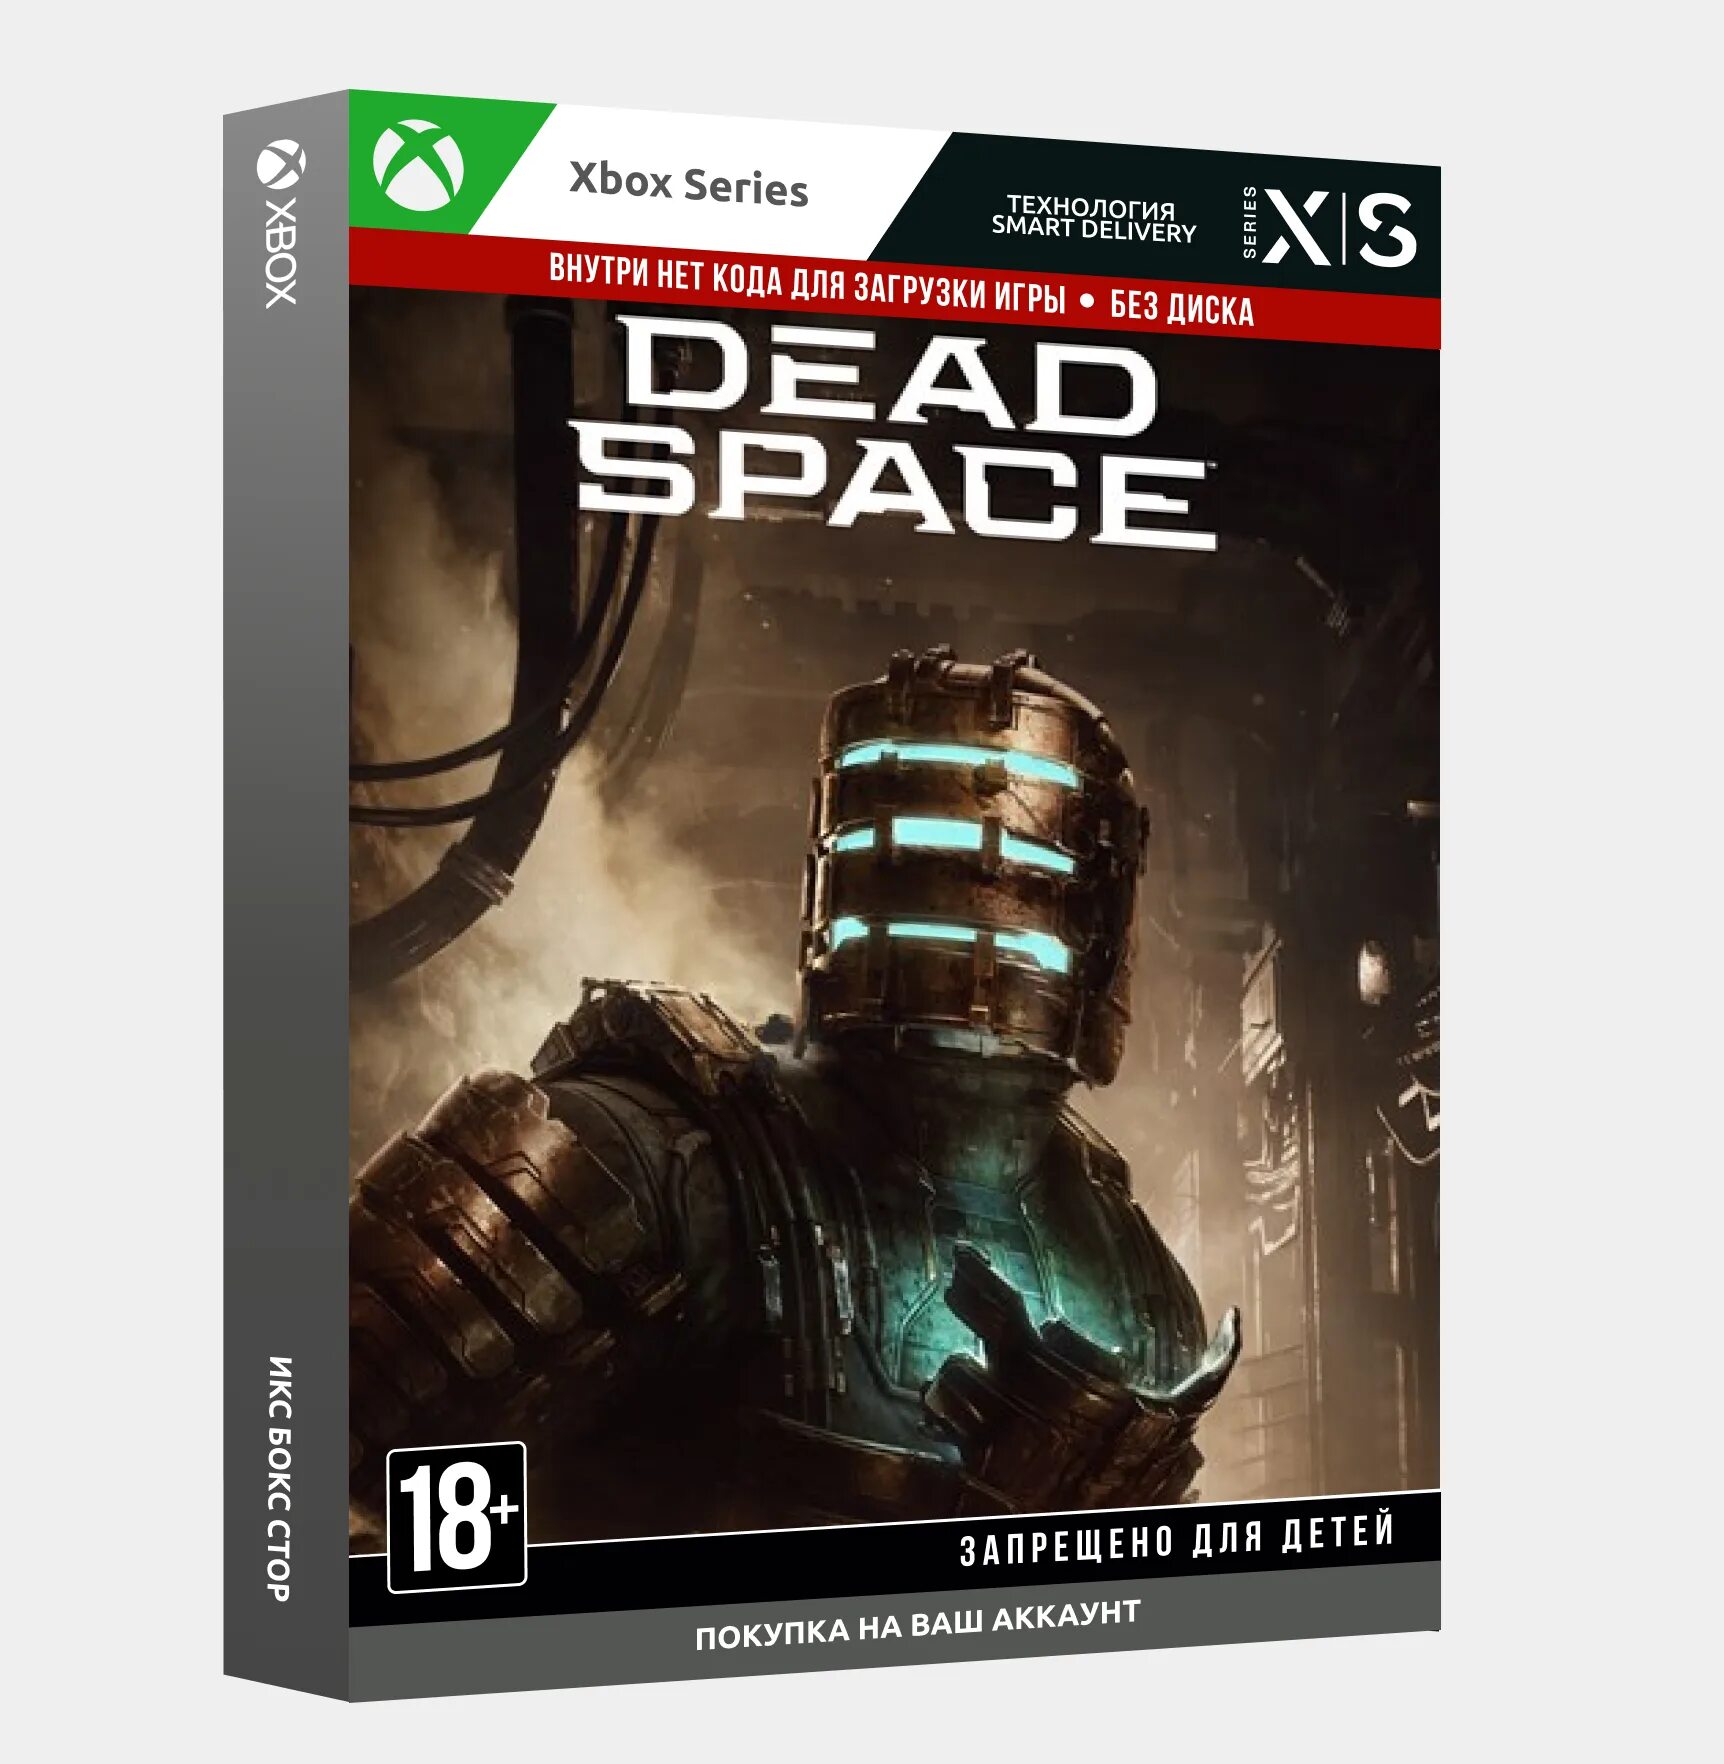 Dead Space 2023. Xbox 2023. Dead Space (игра, 2023) обложка. Dead Space Xbox Series x. Игра 2023 xbox series